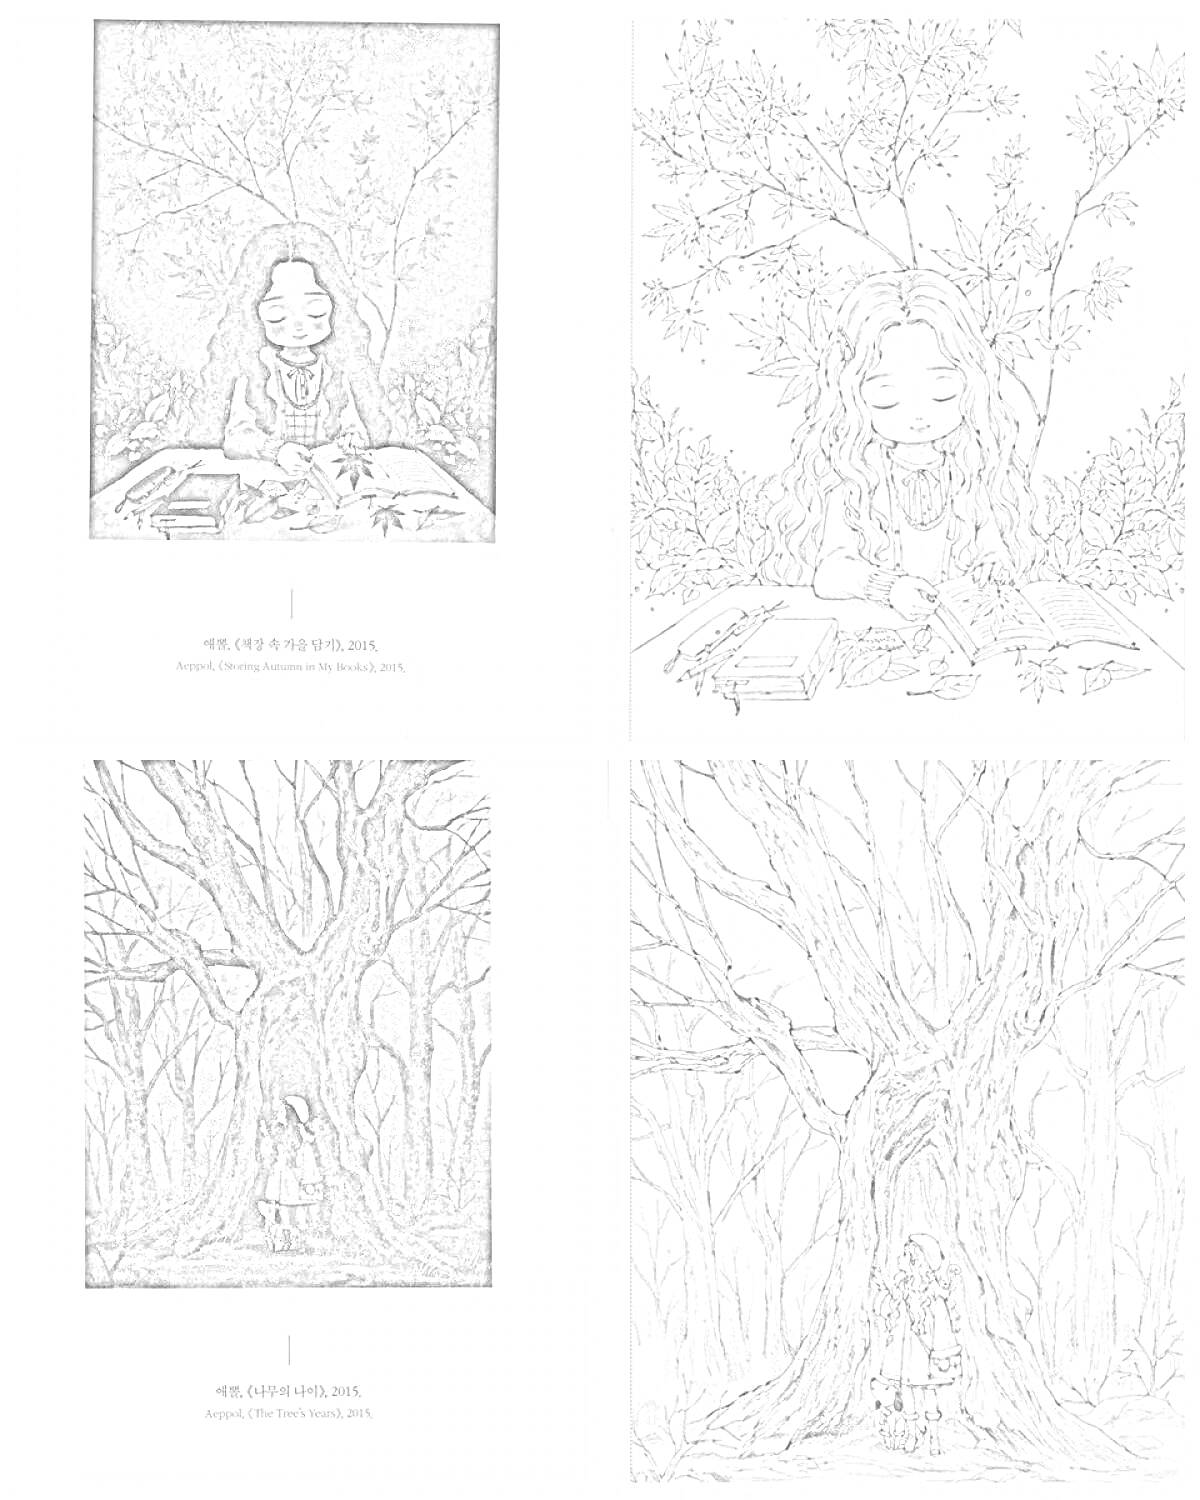 Раскраска Девочка среди осенних листьев и книг, девочка с книгами под деревом, девочка под большим деревом среди опавших листьев, девочка под ветвистым деревом